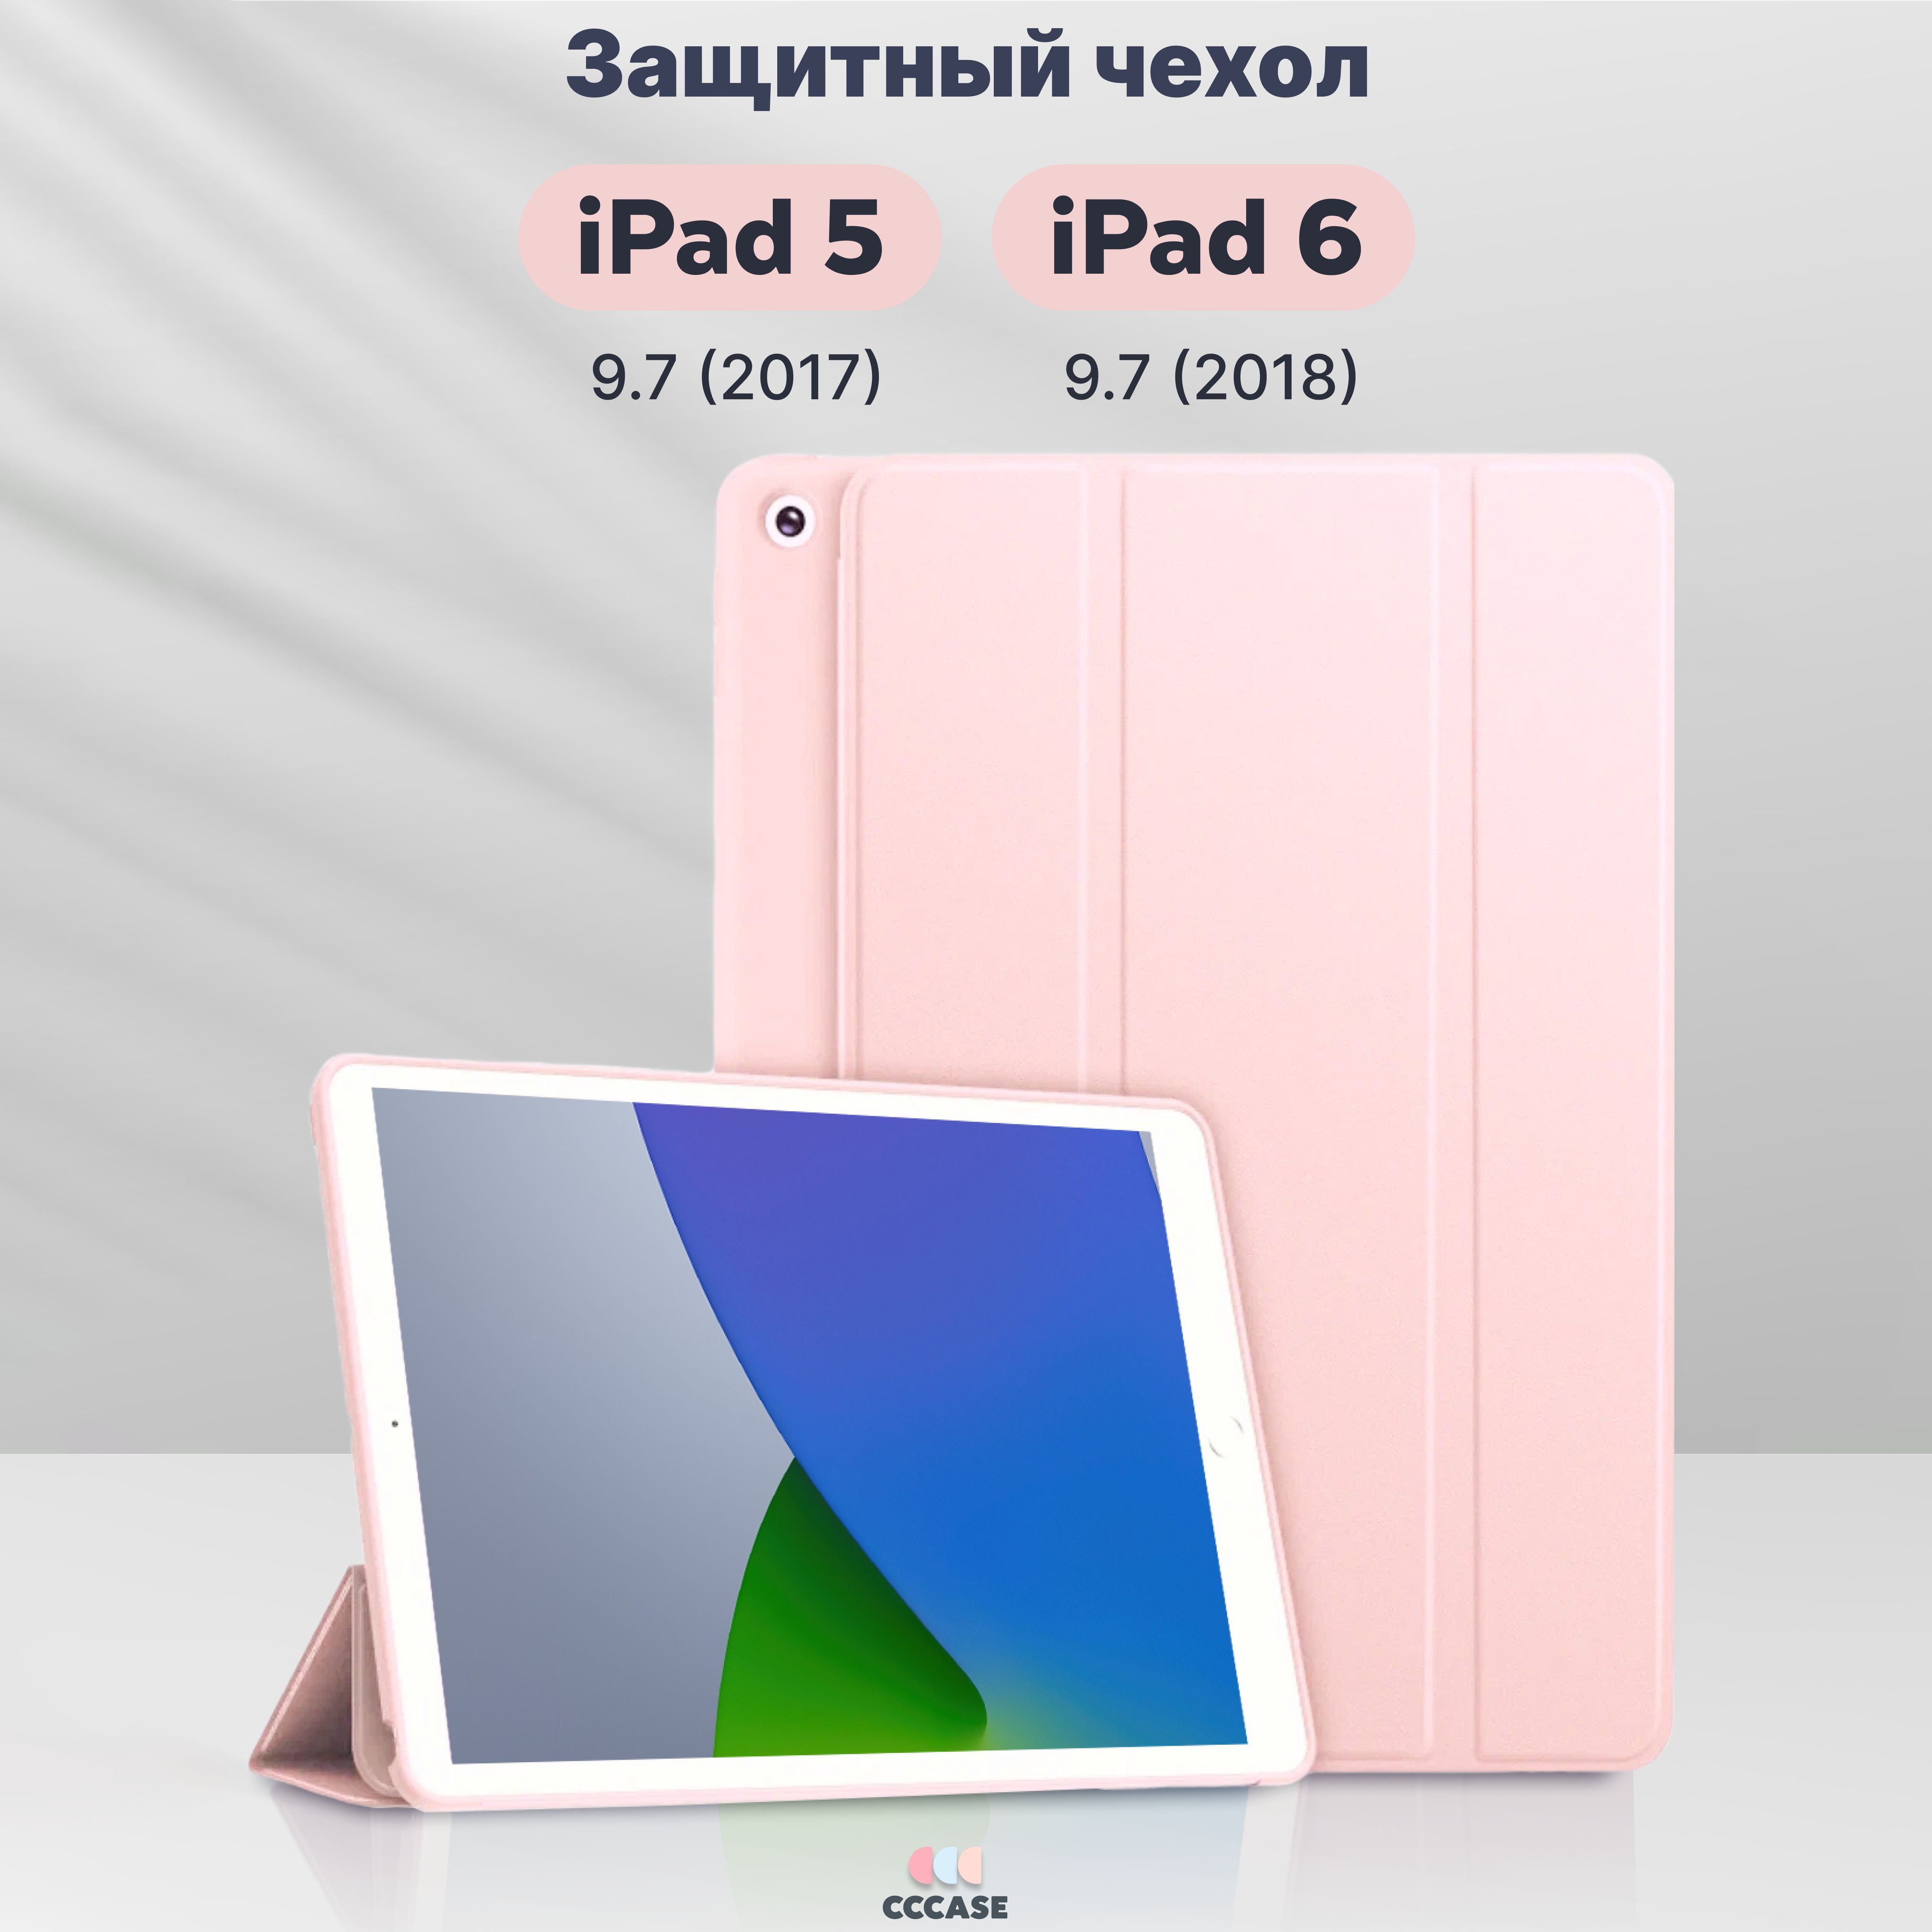 ЧехолкнижкаCCCASEдляAppleiPad59.7(2017)New/iPad69.7(2018)New-A1822,A1823,A1893,A1954,автоблокировкаэкрана,трансформируетсявподставку,цвет:пастельно-розовый